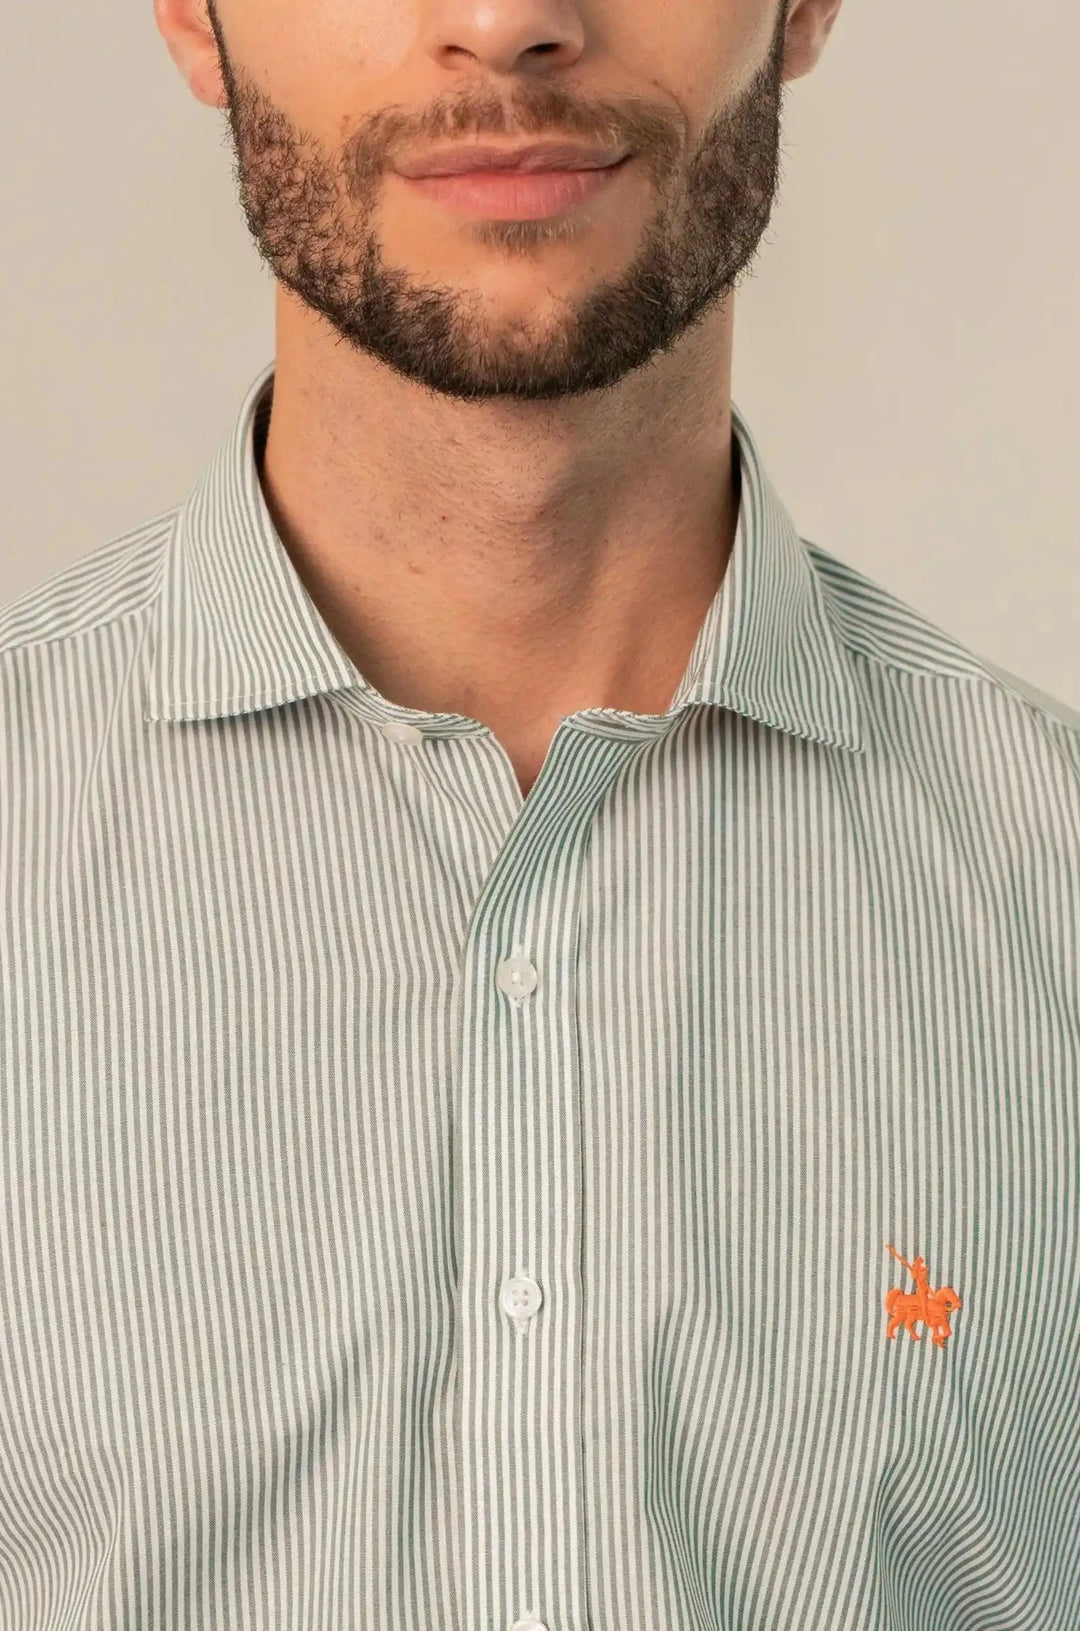 Camisa para hombre manga larga de rayas finas verdes claro y base blanca. Logo naranja. complemento perfecto para un look casual e informal.